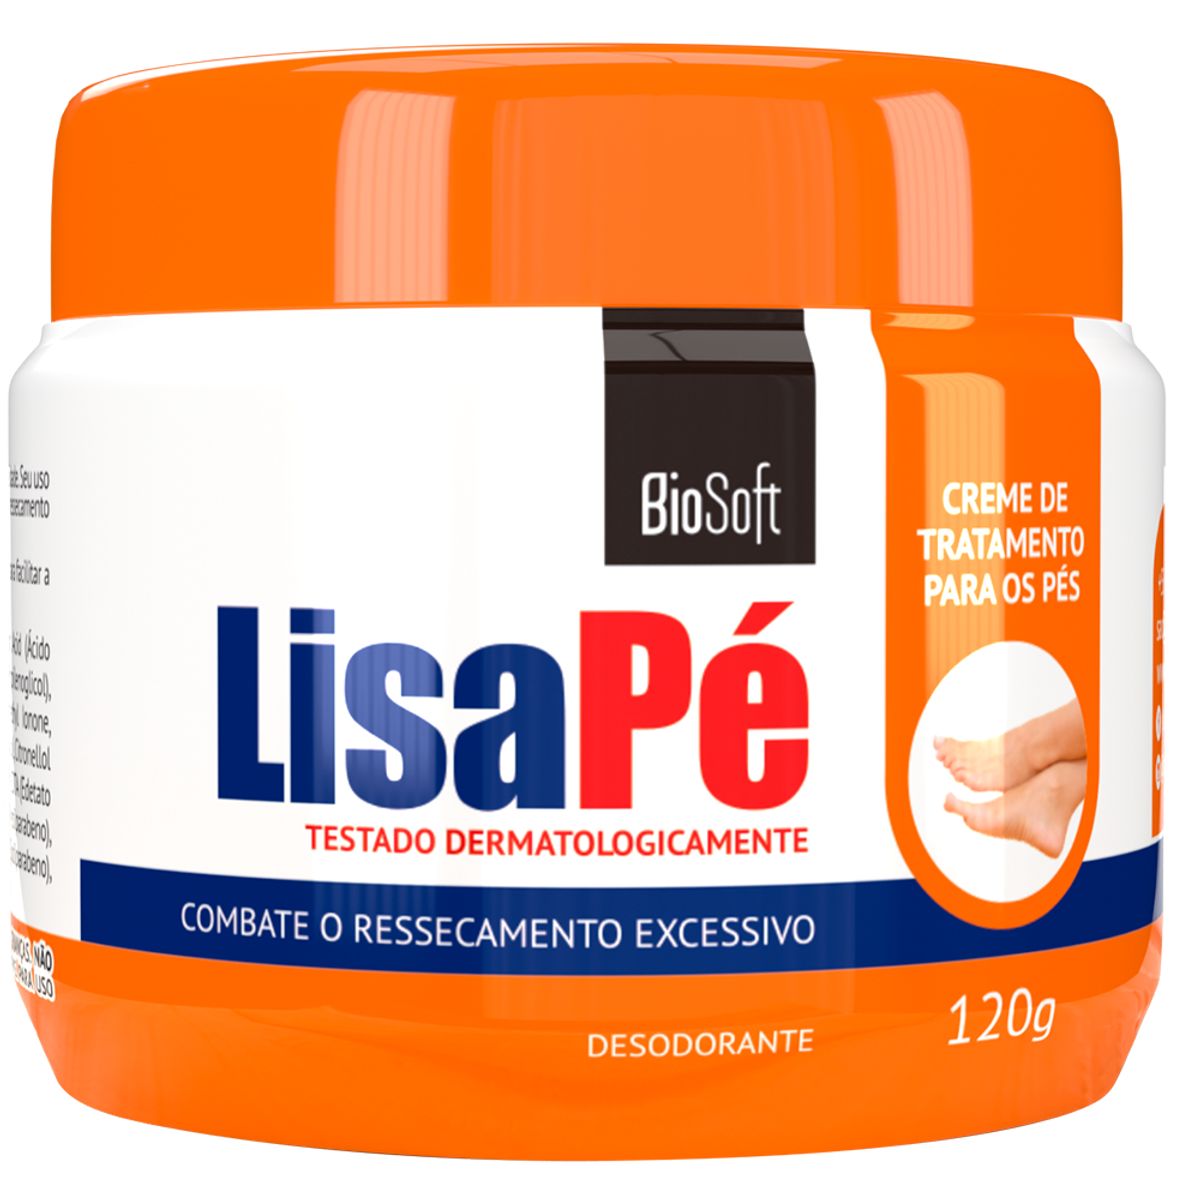 Creme de Tratamento Bio Soft Lisa Pé 120g